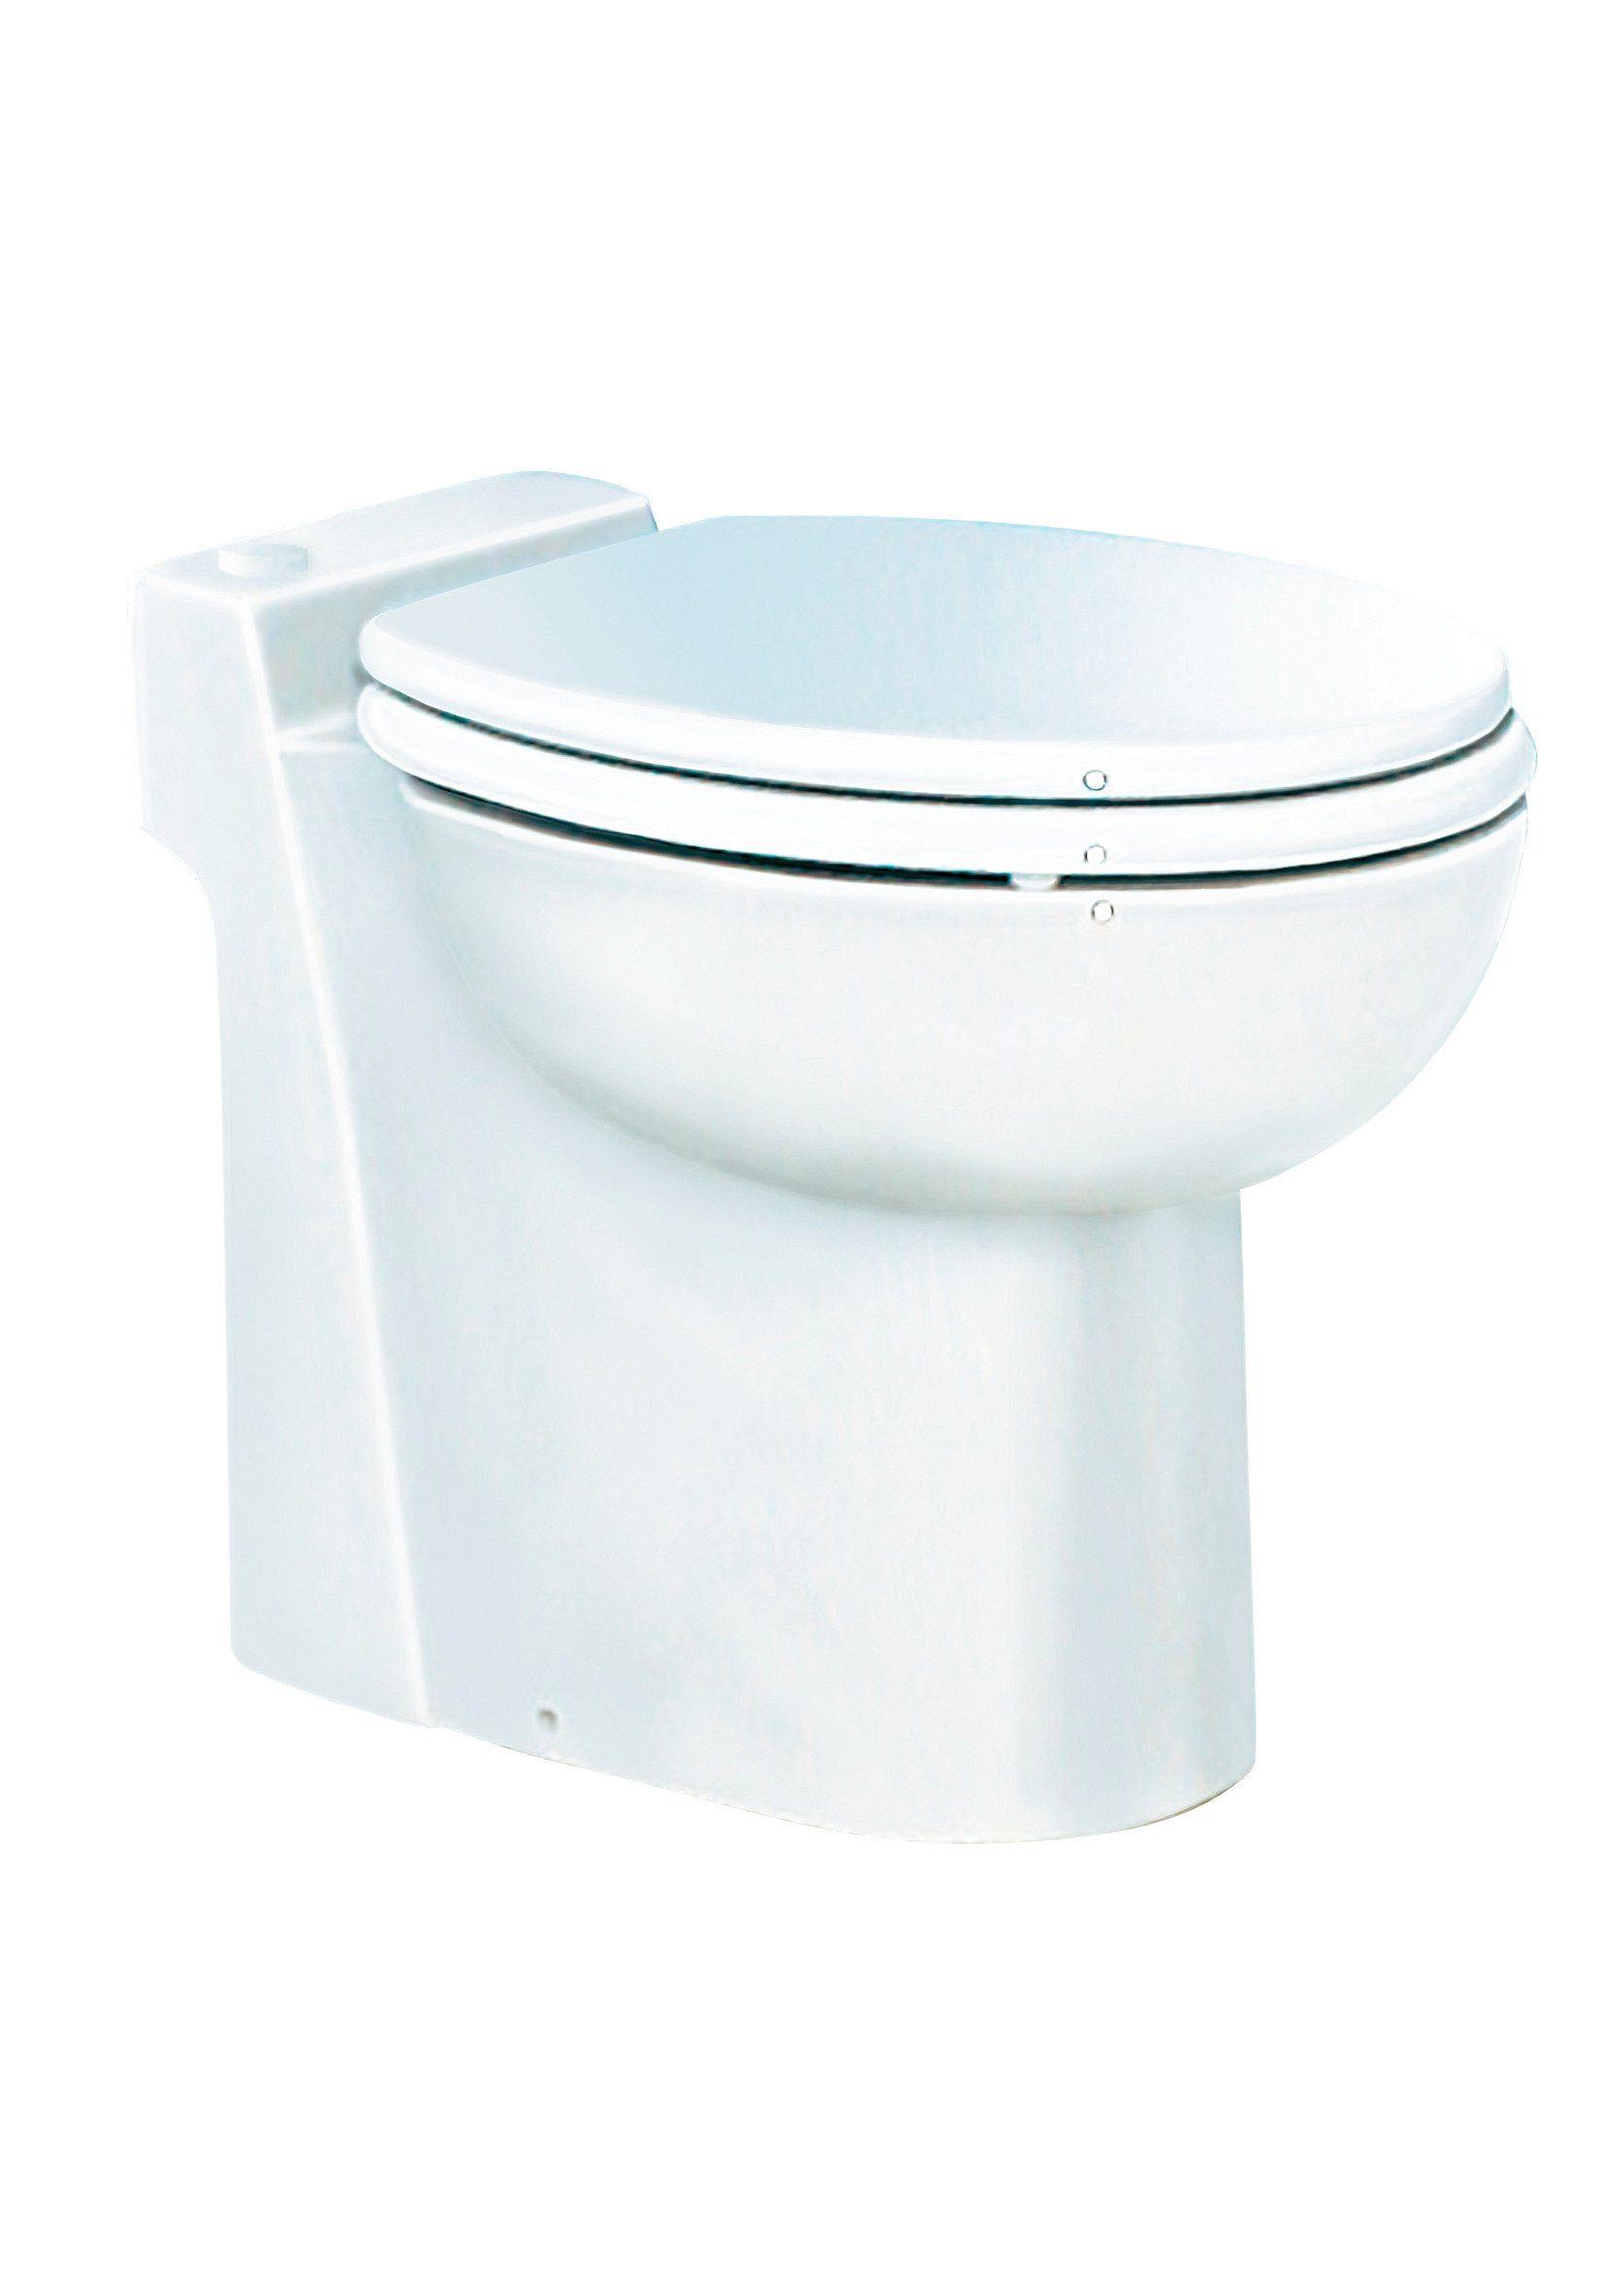 SETMA Tiefspül-WC Kompakt, bodenstehend, Abgang waagerecht